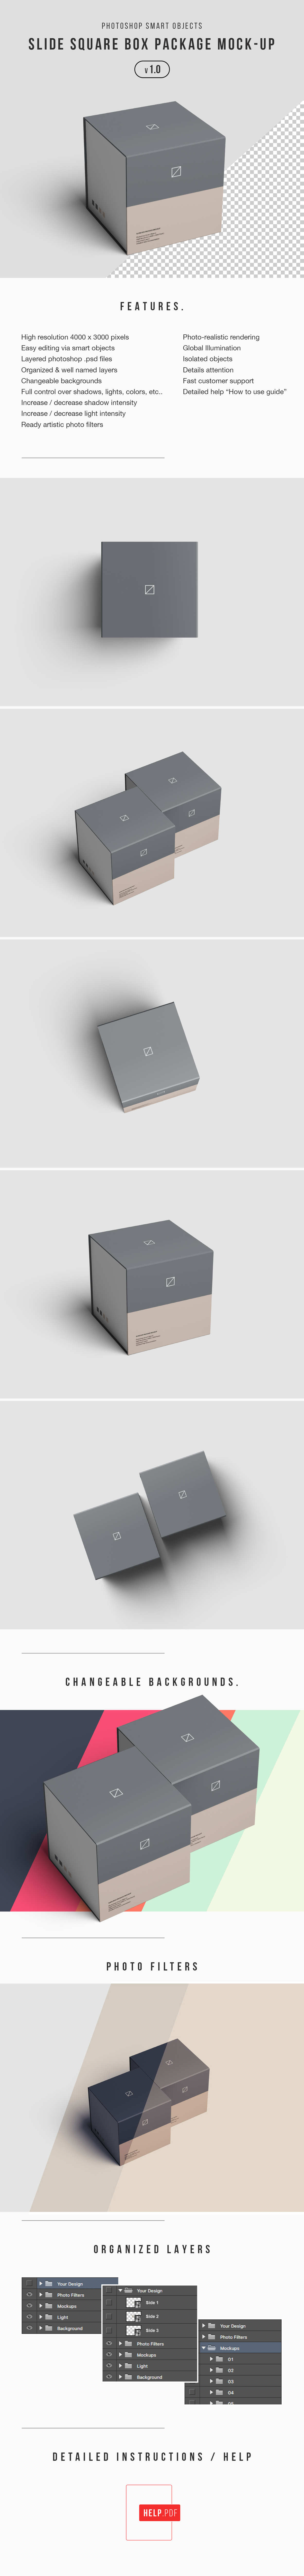 高端礼品/产品包装盒定制设计效果图样机模板 Slide Box Package Mockup插图